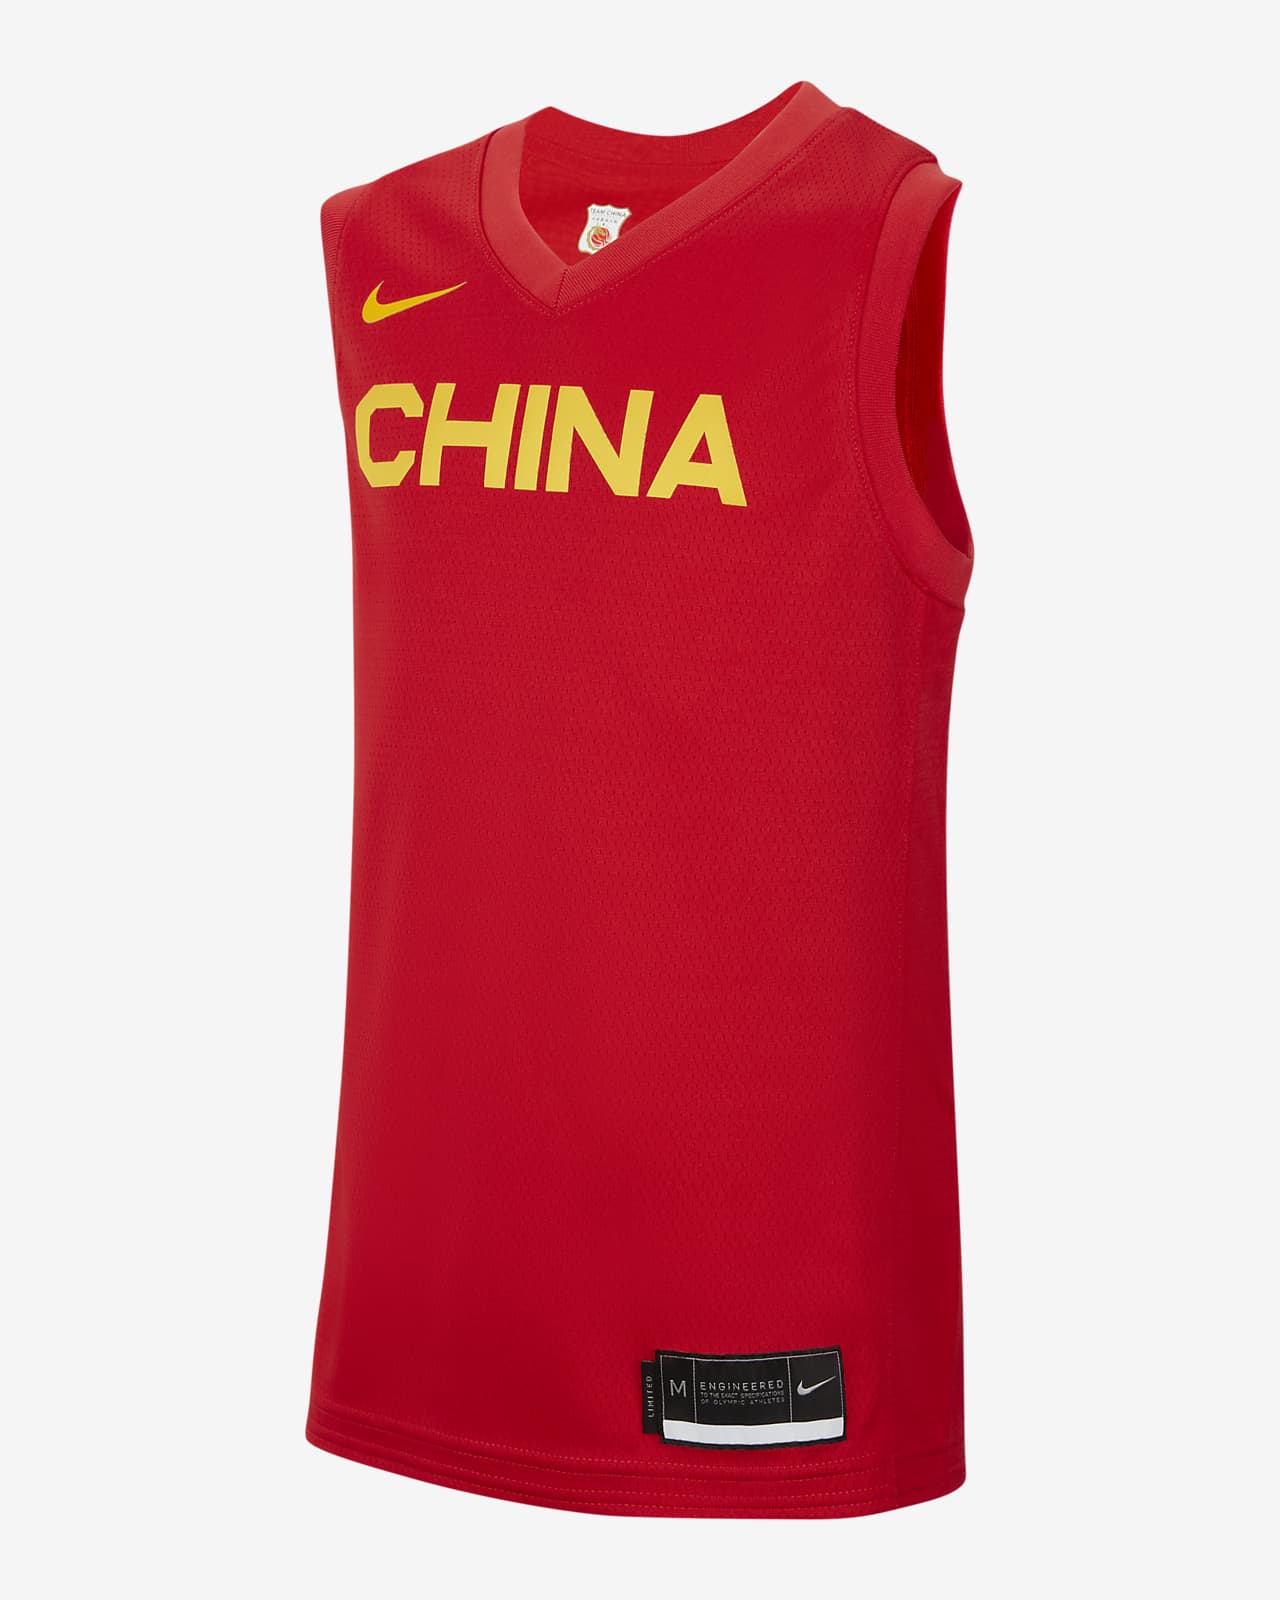 Koszulka do koszykówki dla dużych dzieci Nike Chiny (wersja wyjazdowa)